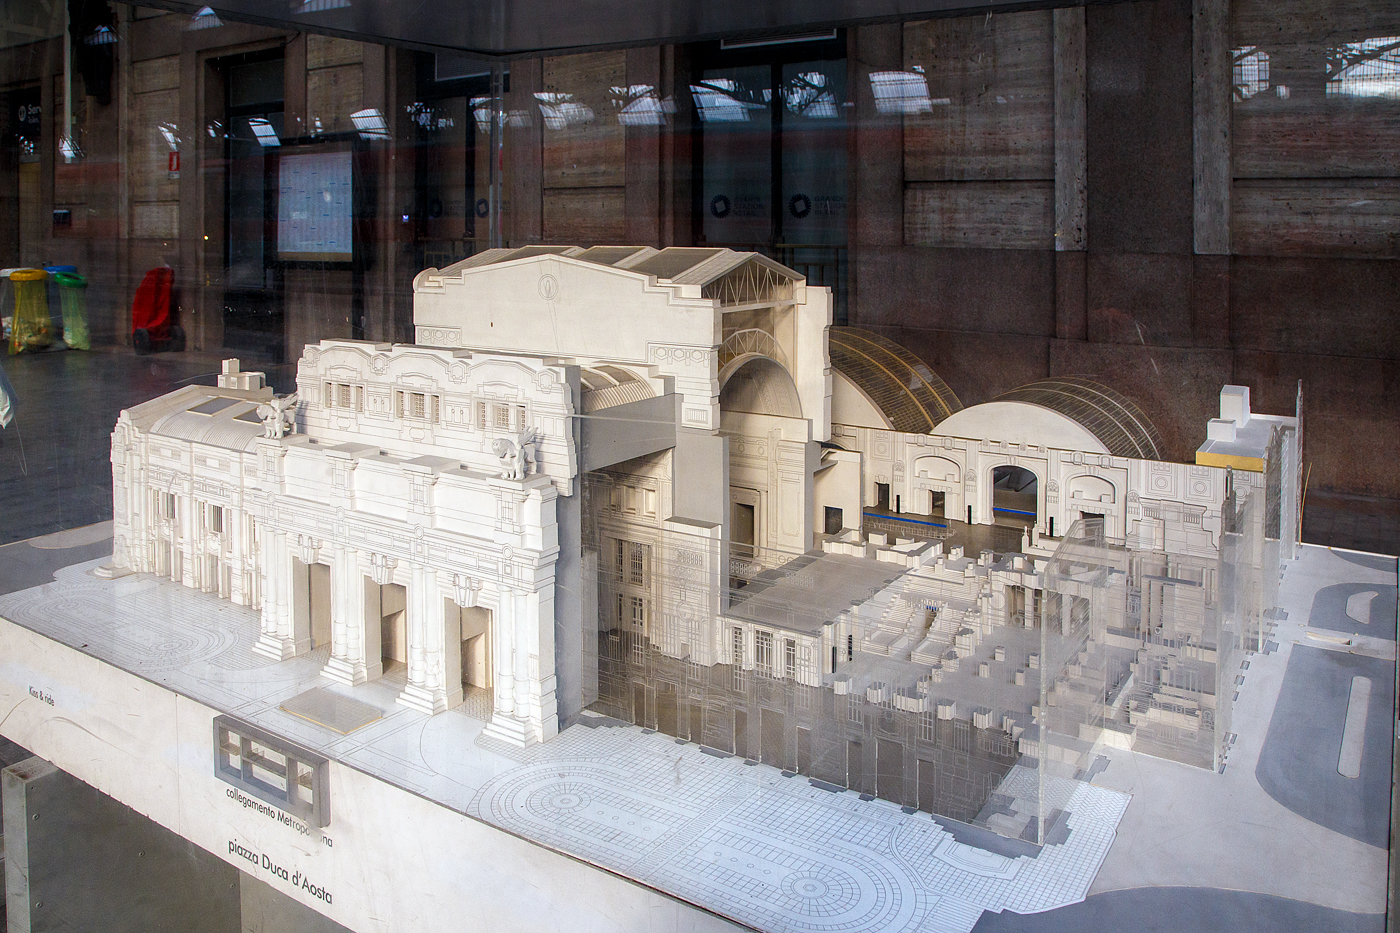 Modell vom Bahnhof Milano Centrale, Ansicht von der Vorplatzseite (Piazza Duca d'Aosta), hier am 23.07.2022 im Bahnhof.